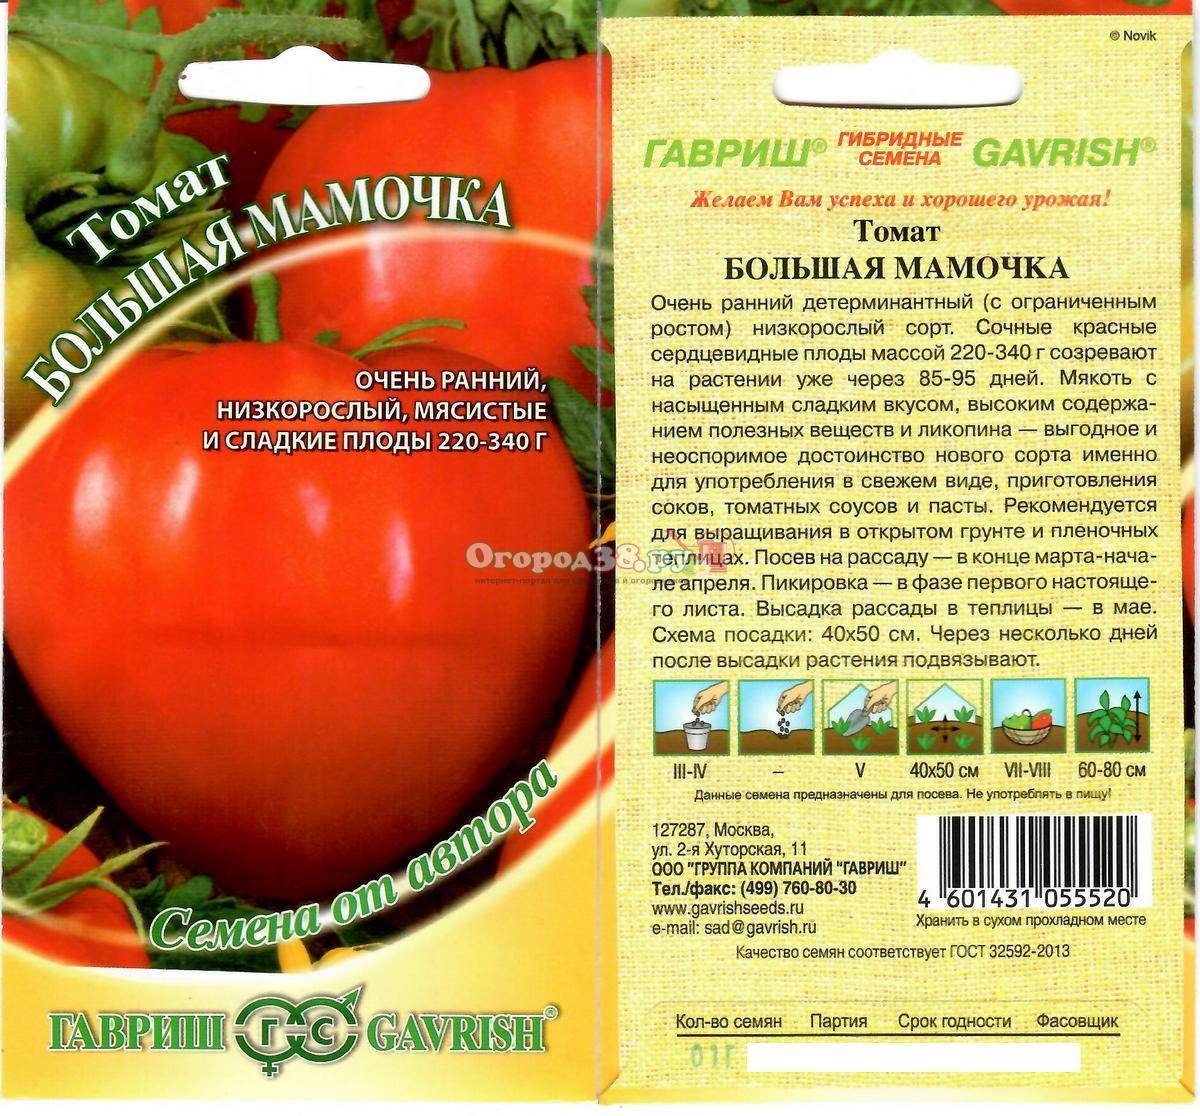 Описание томата сладкое чудо и рекомендации по выращиванию рассады